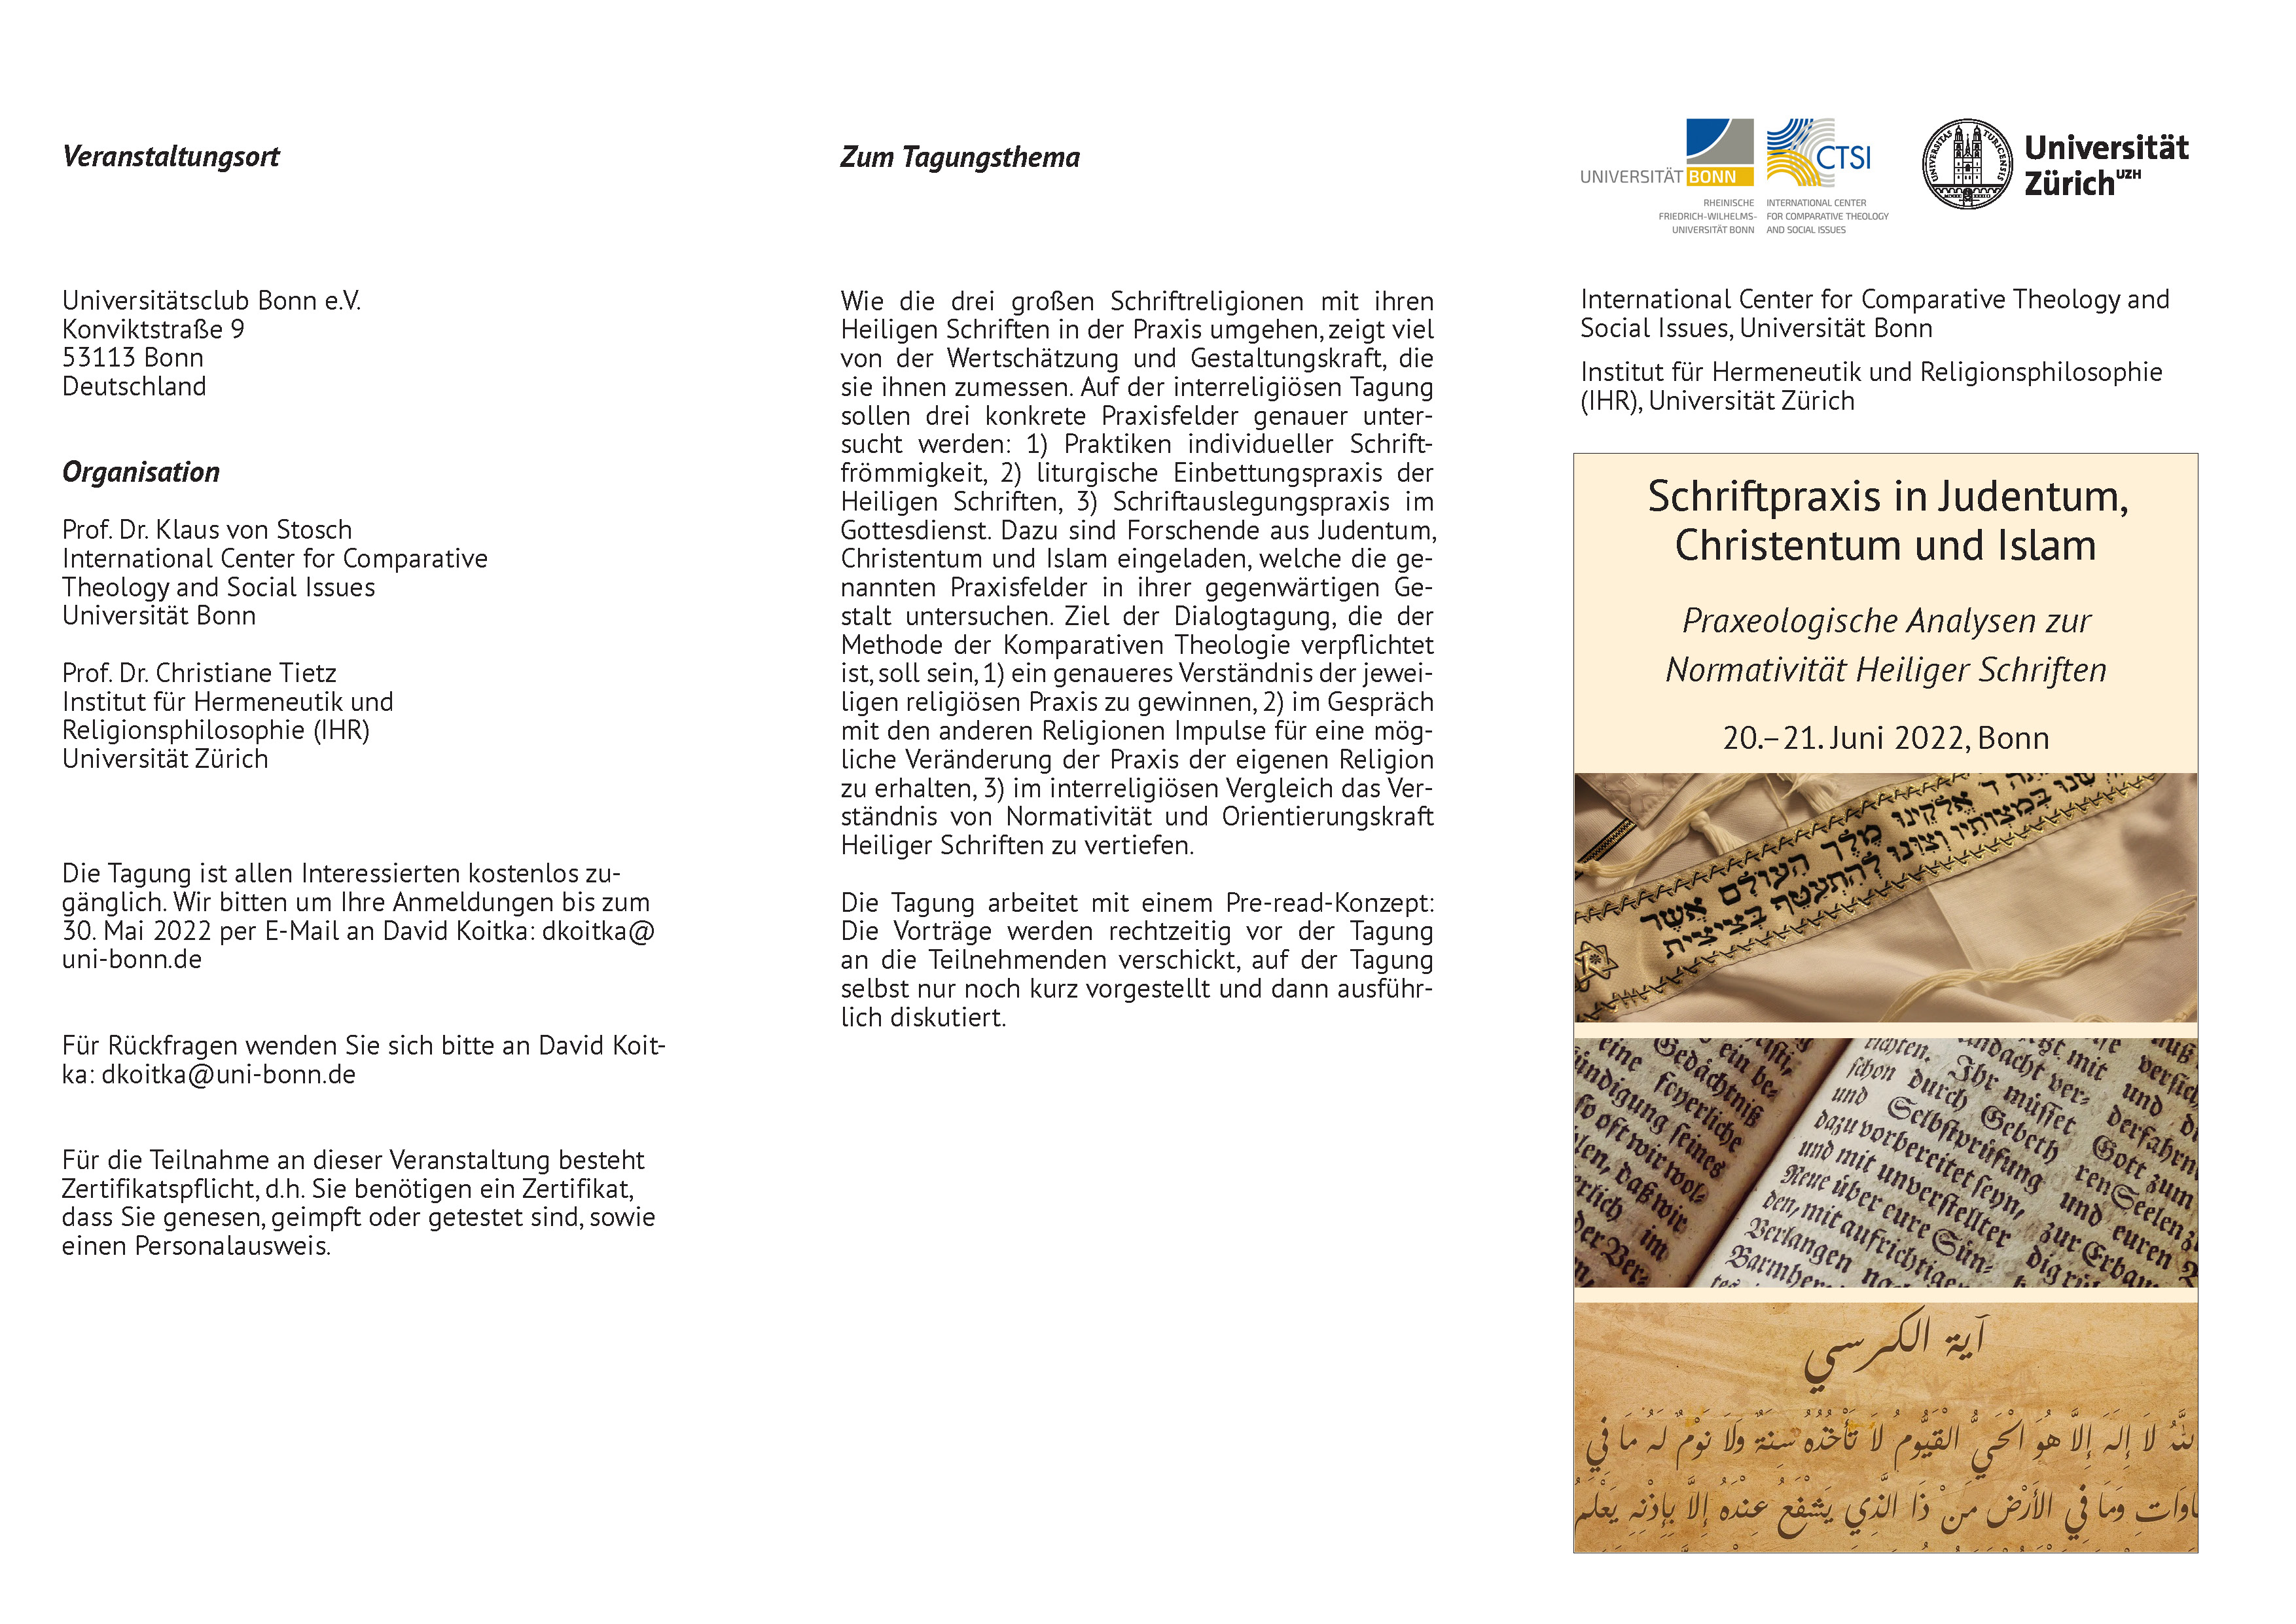 Schriftpraxis in Judentum, Christentum und Islam